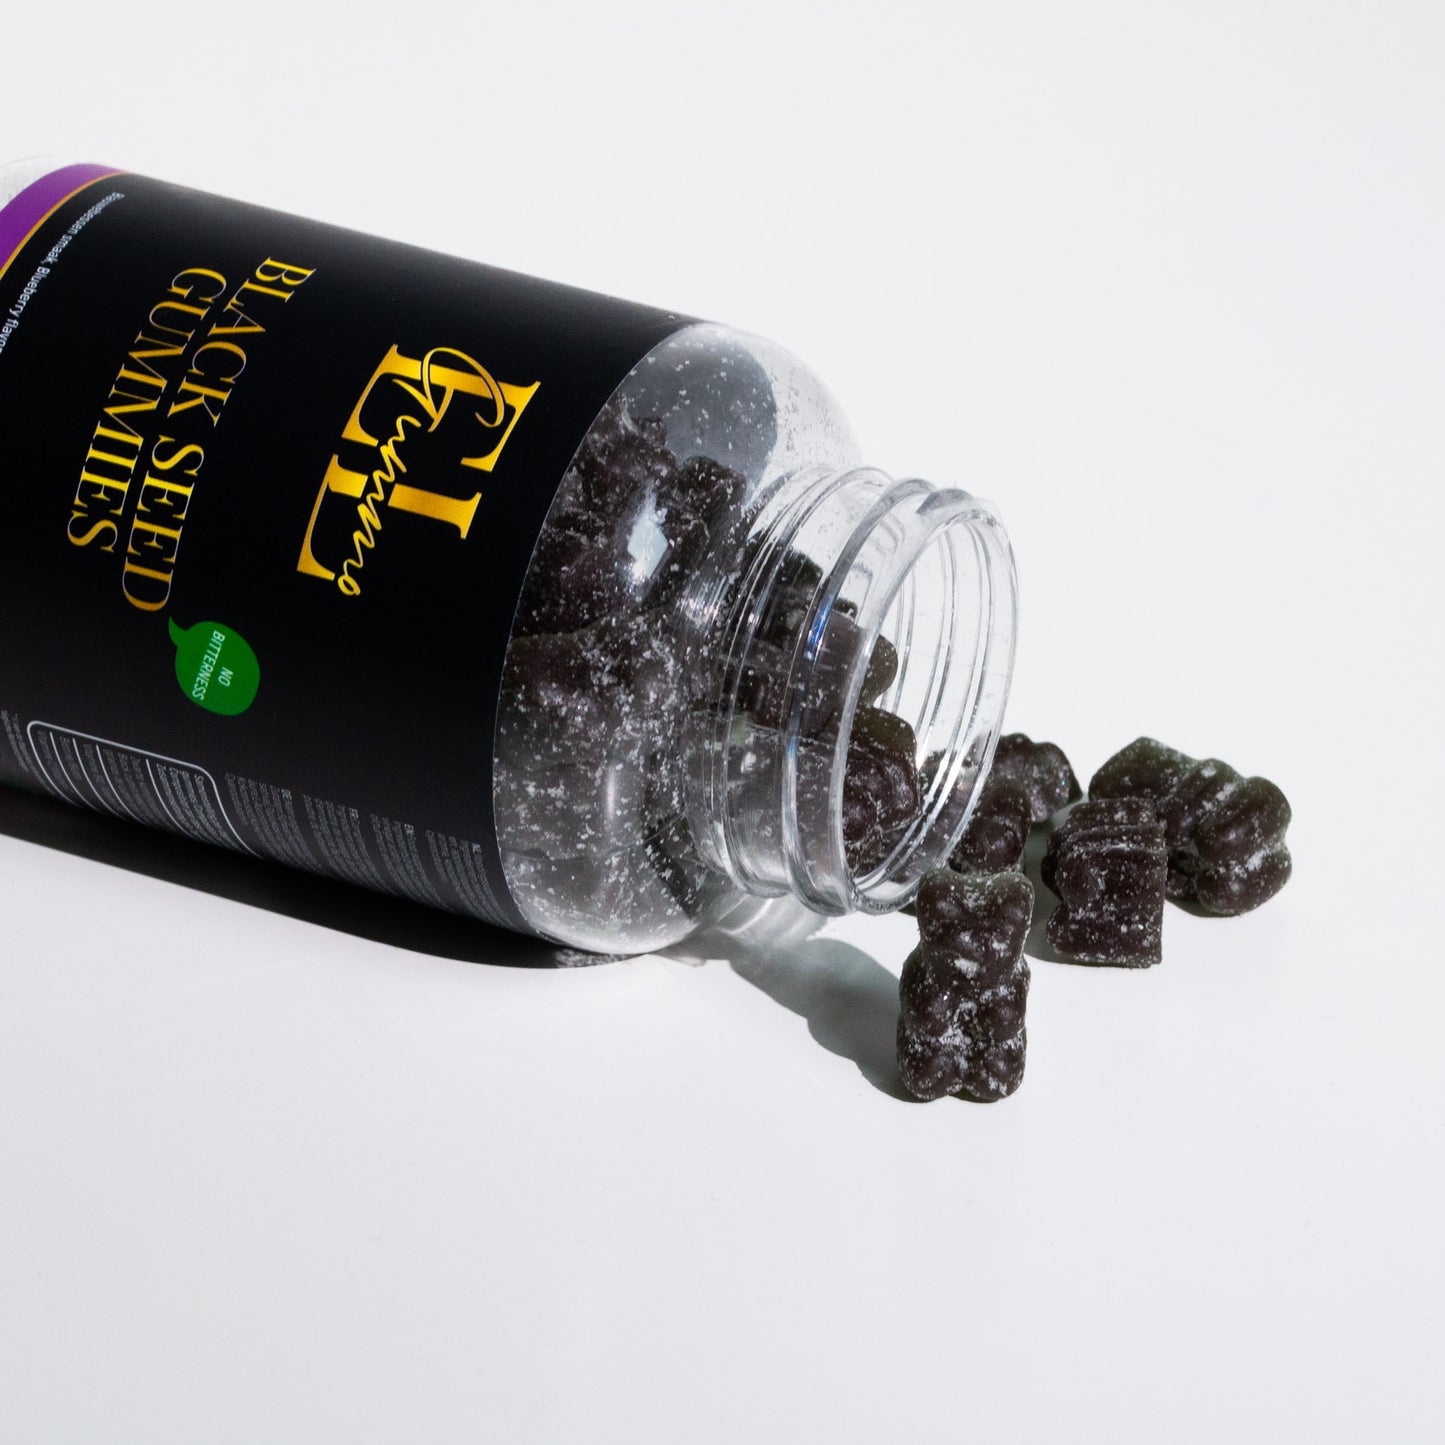 1 jar - Kinder Black Seed Gummies